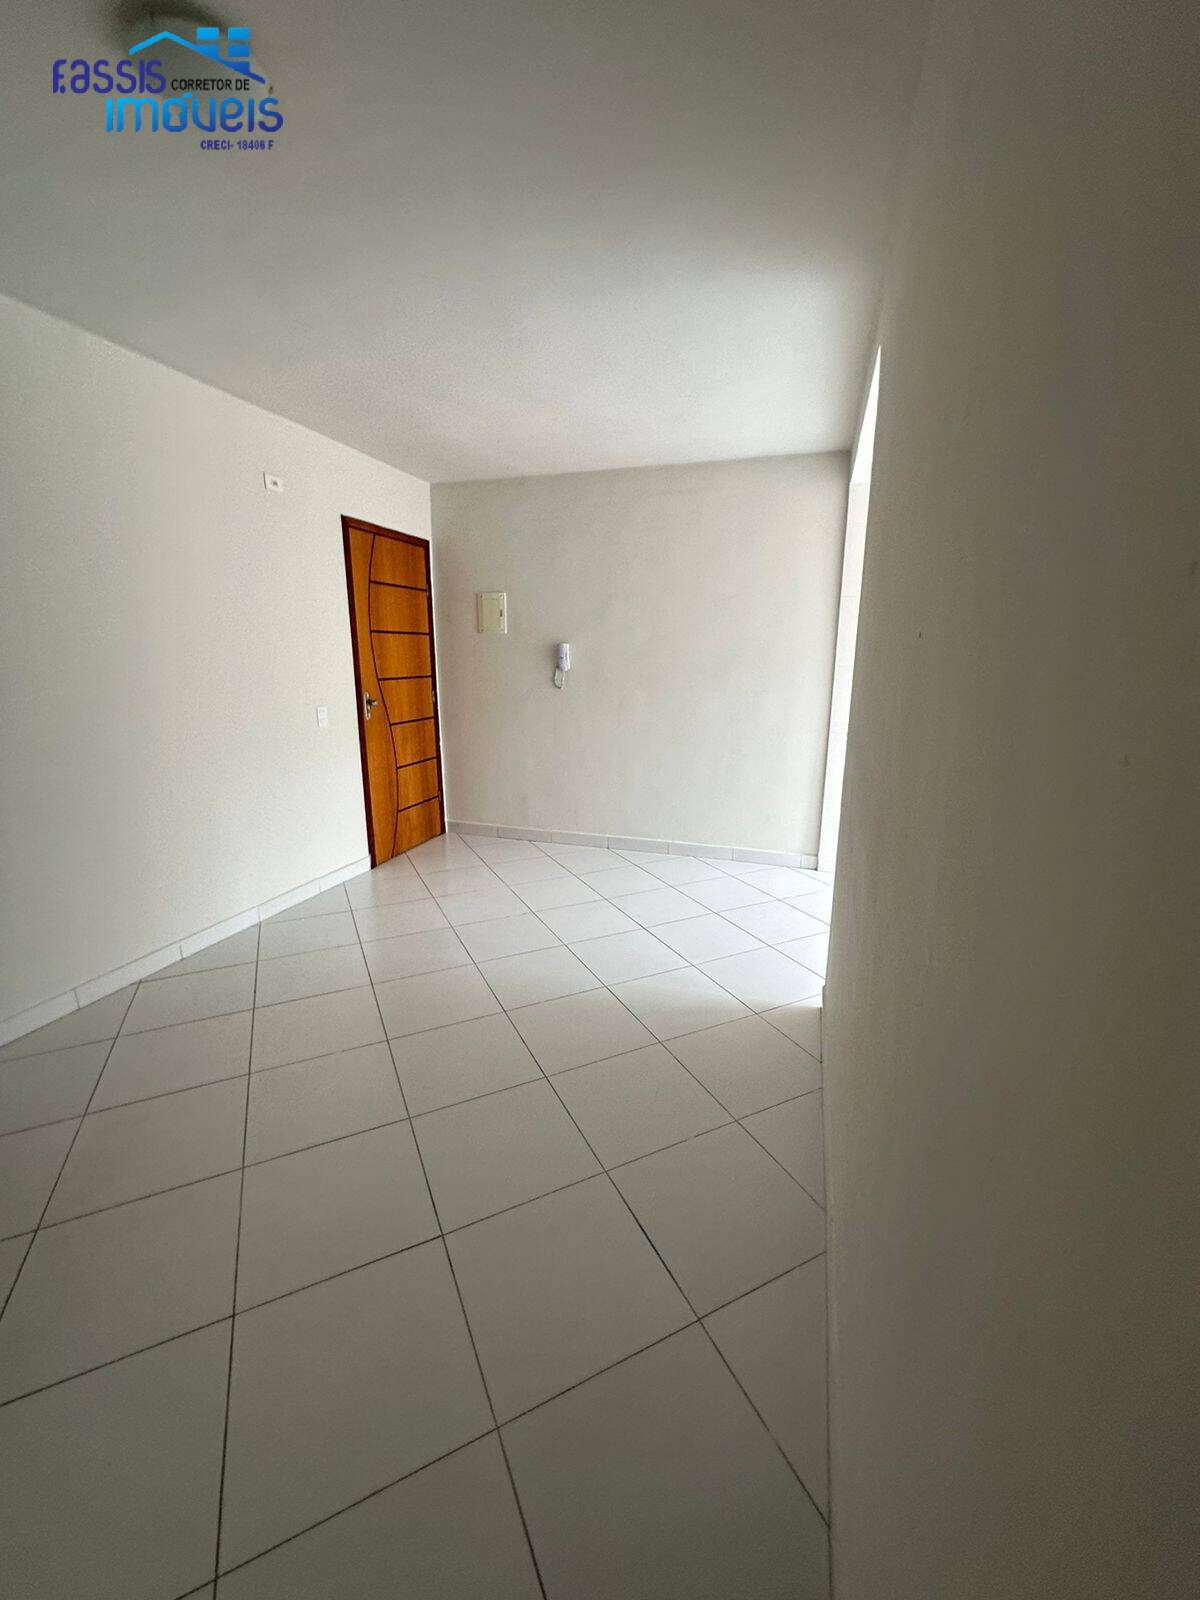 Apartamento, 2 quartos, 50 m² - Foto 3